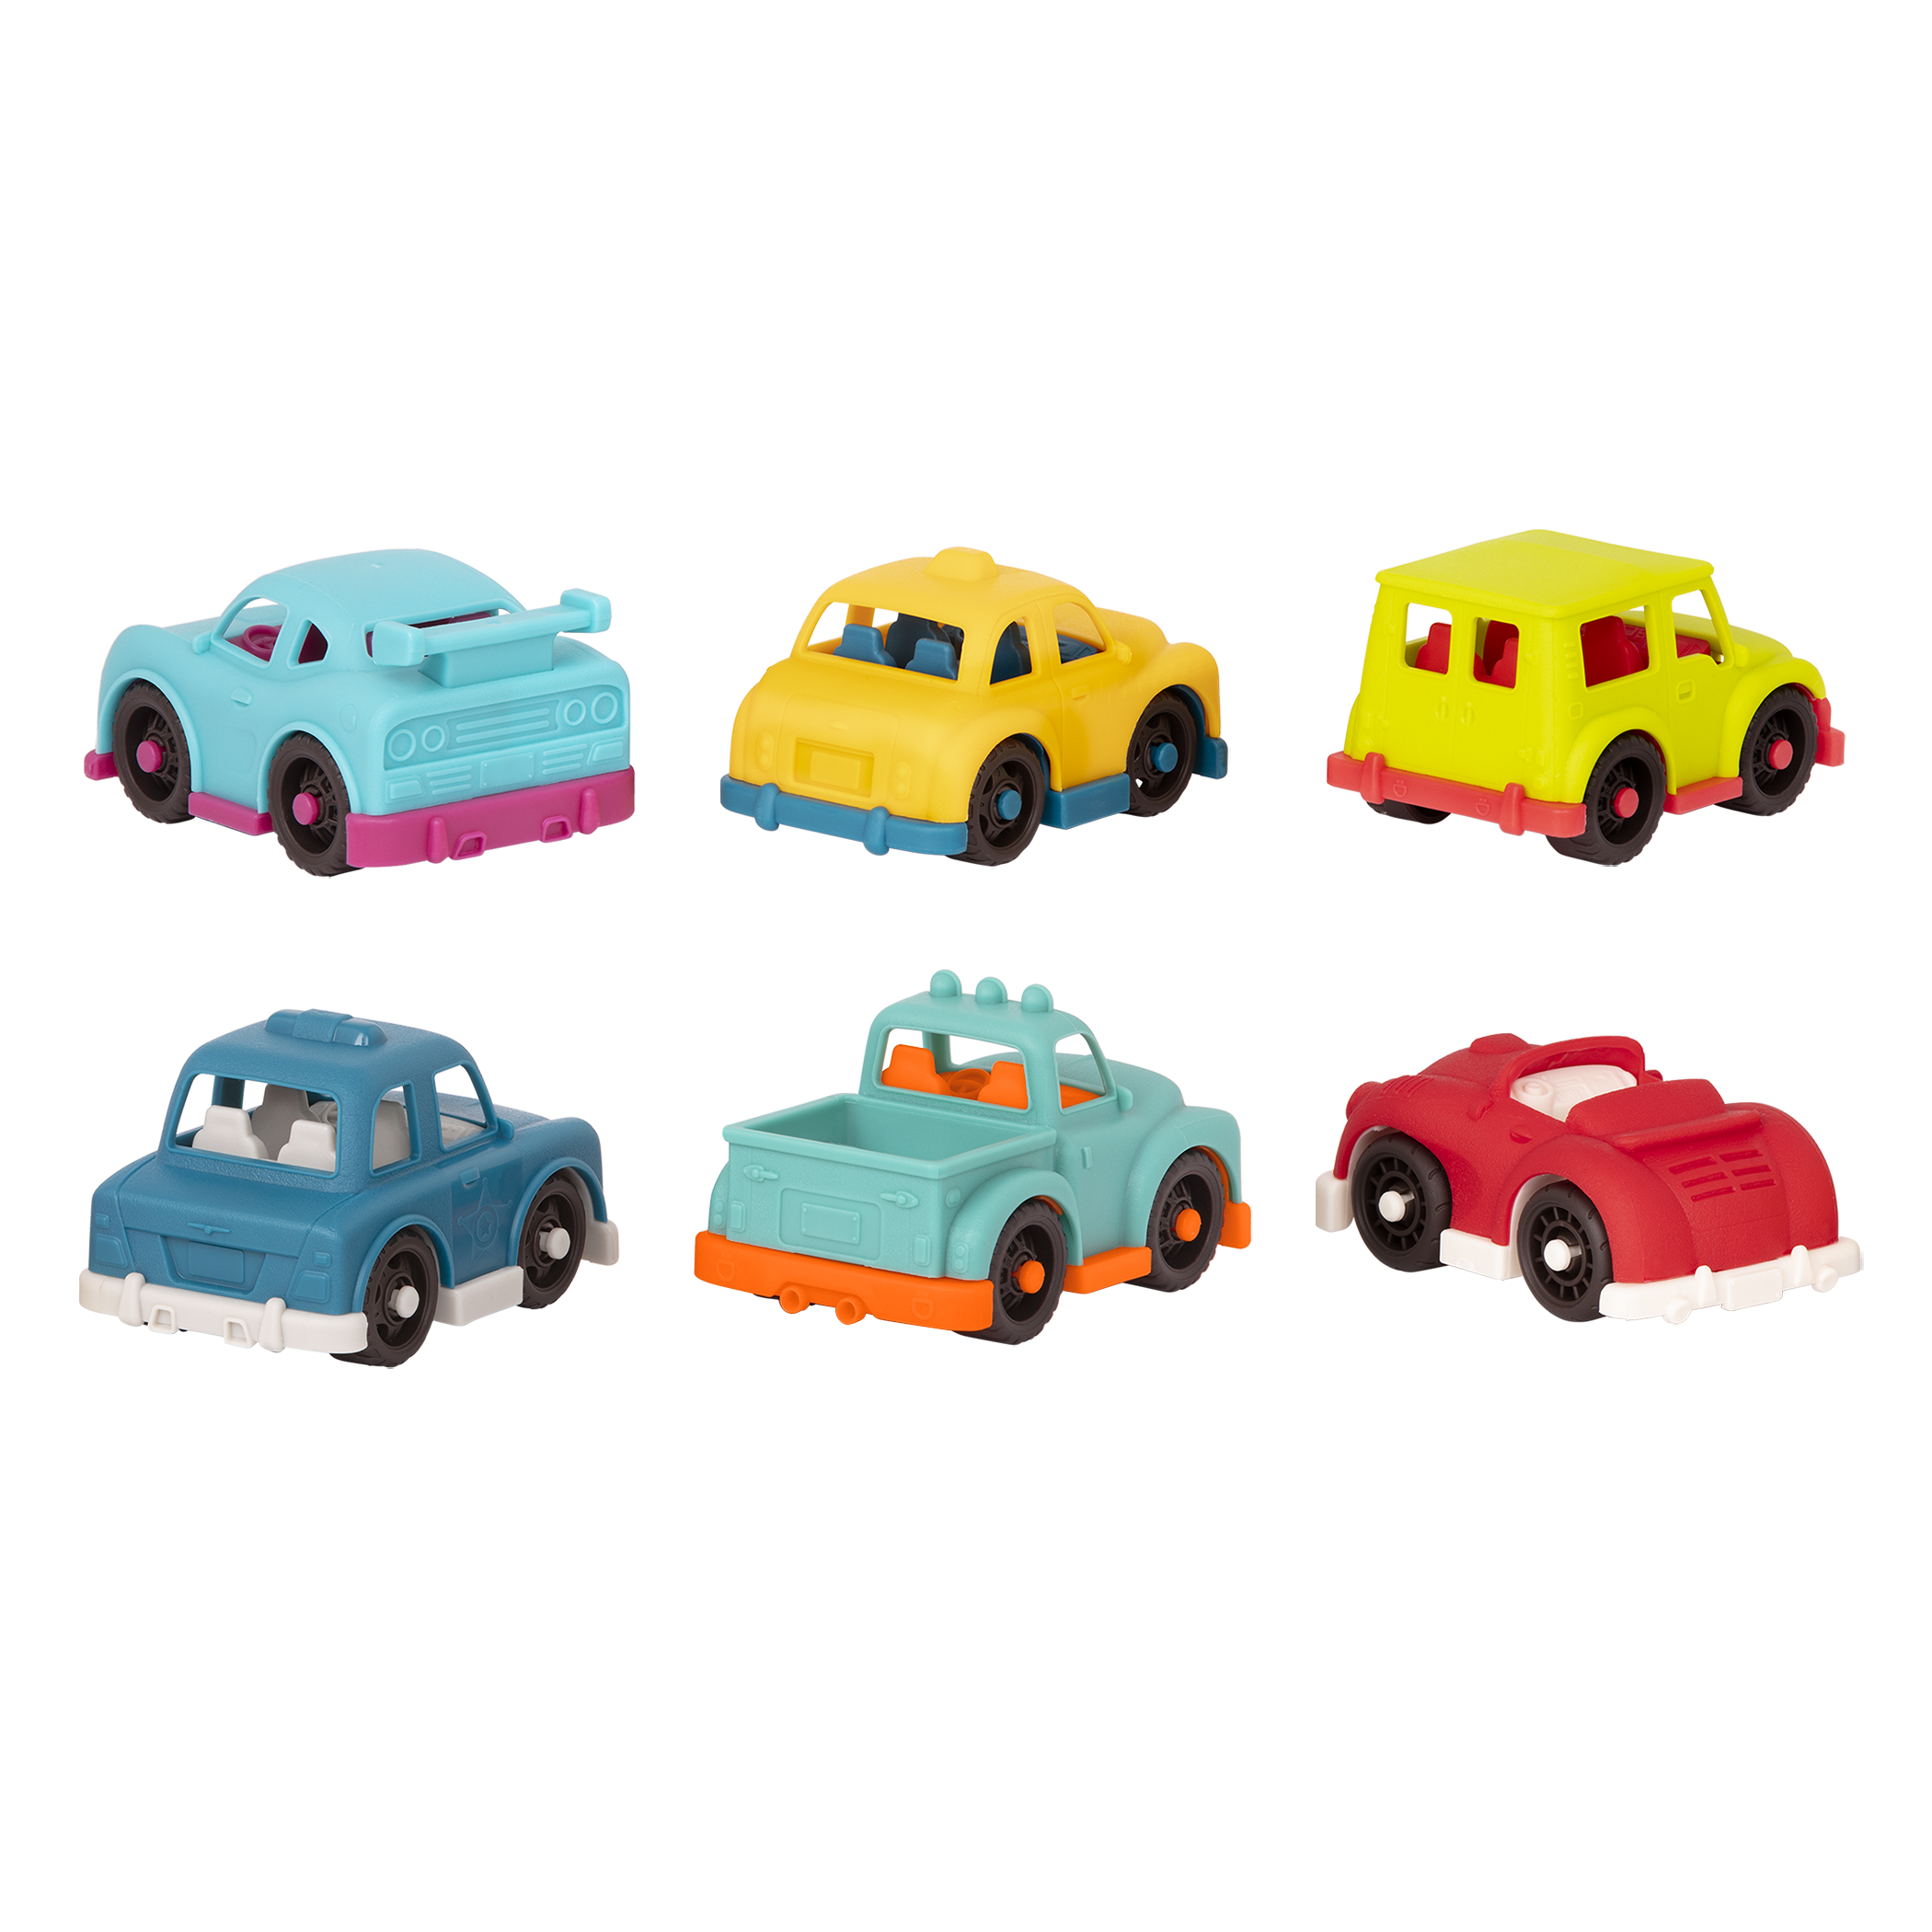 Mini toy vehicles.